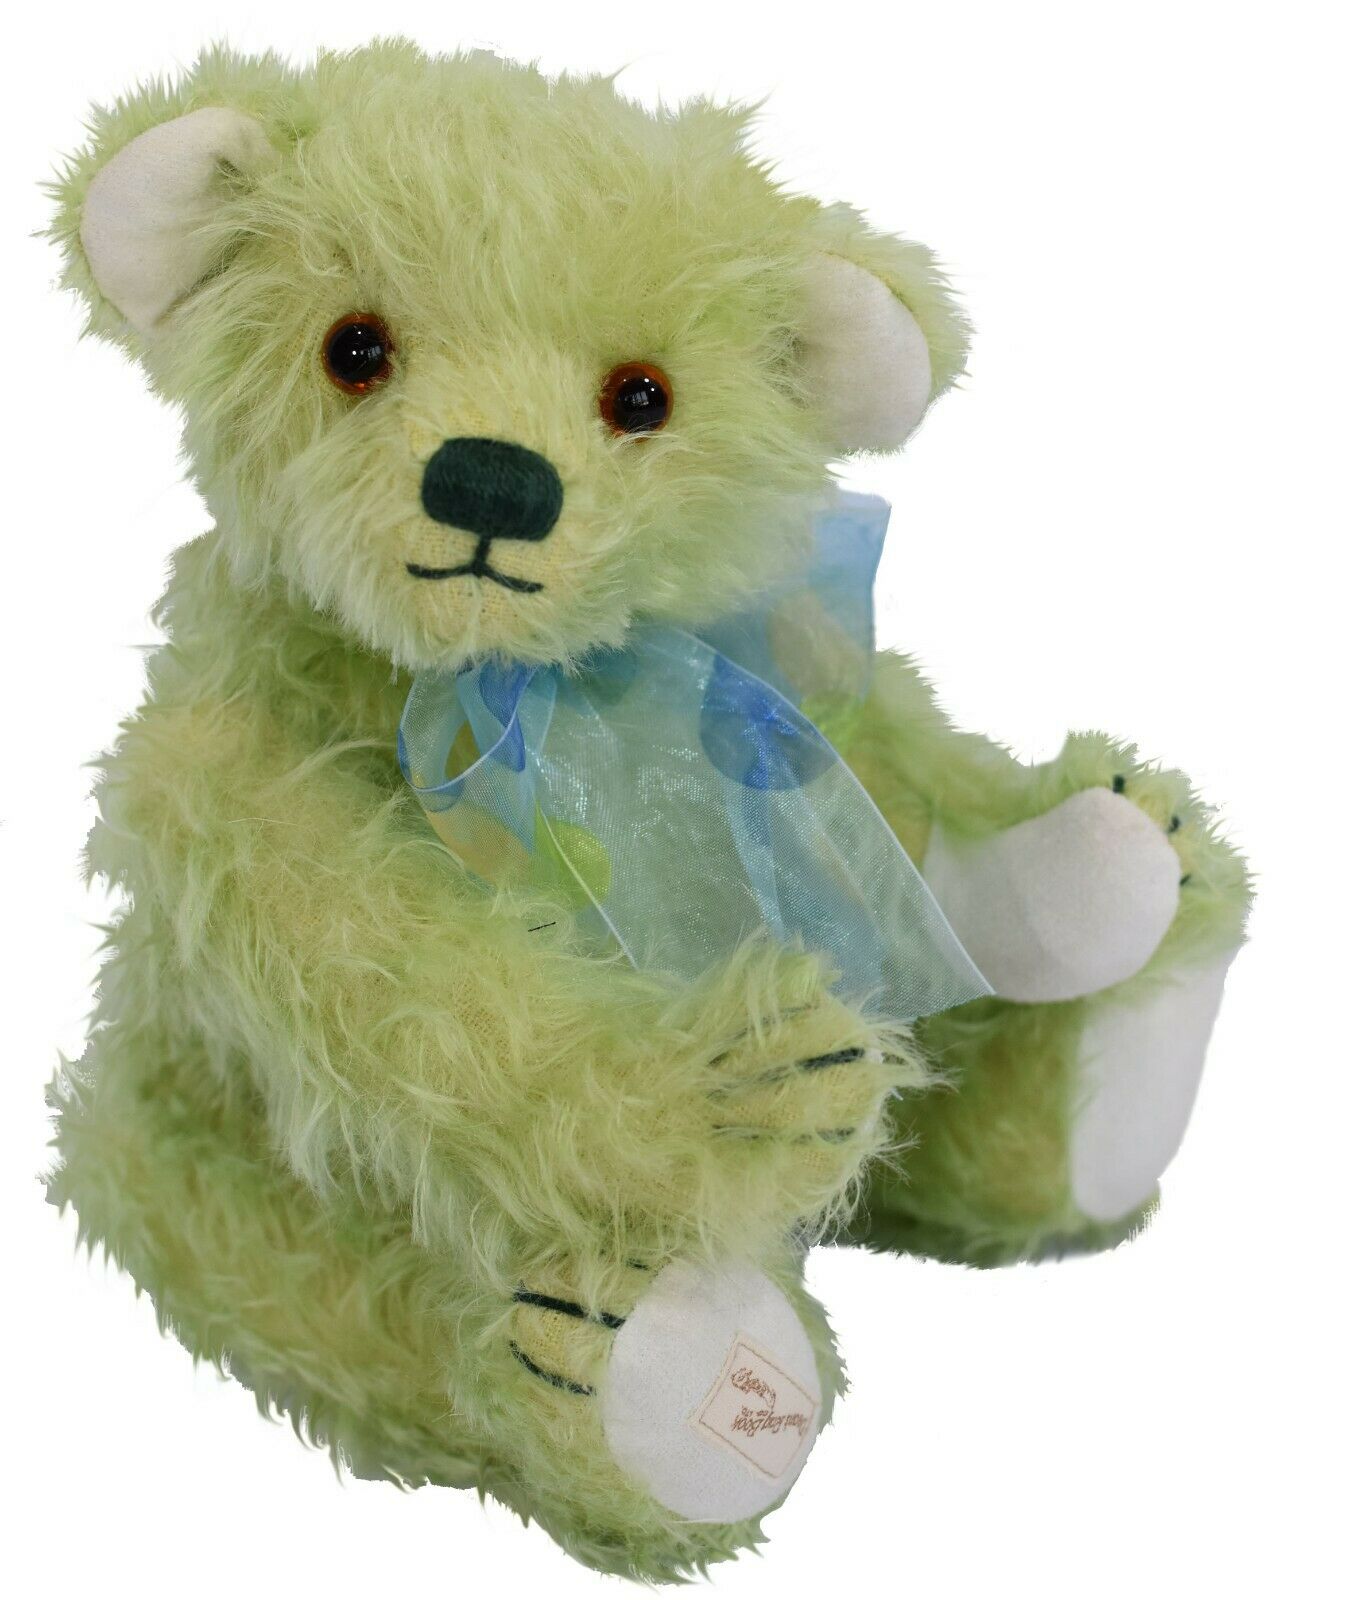 DEAN'S Teddy Lucille 19.008.030 Mohair hellbeige/grün - Limited Edition 299 Exemplare - für Sammler